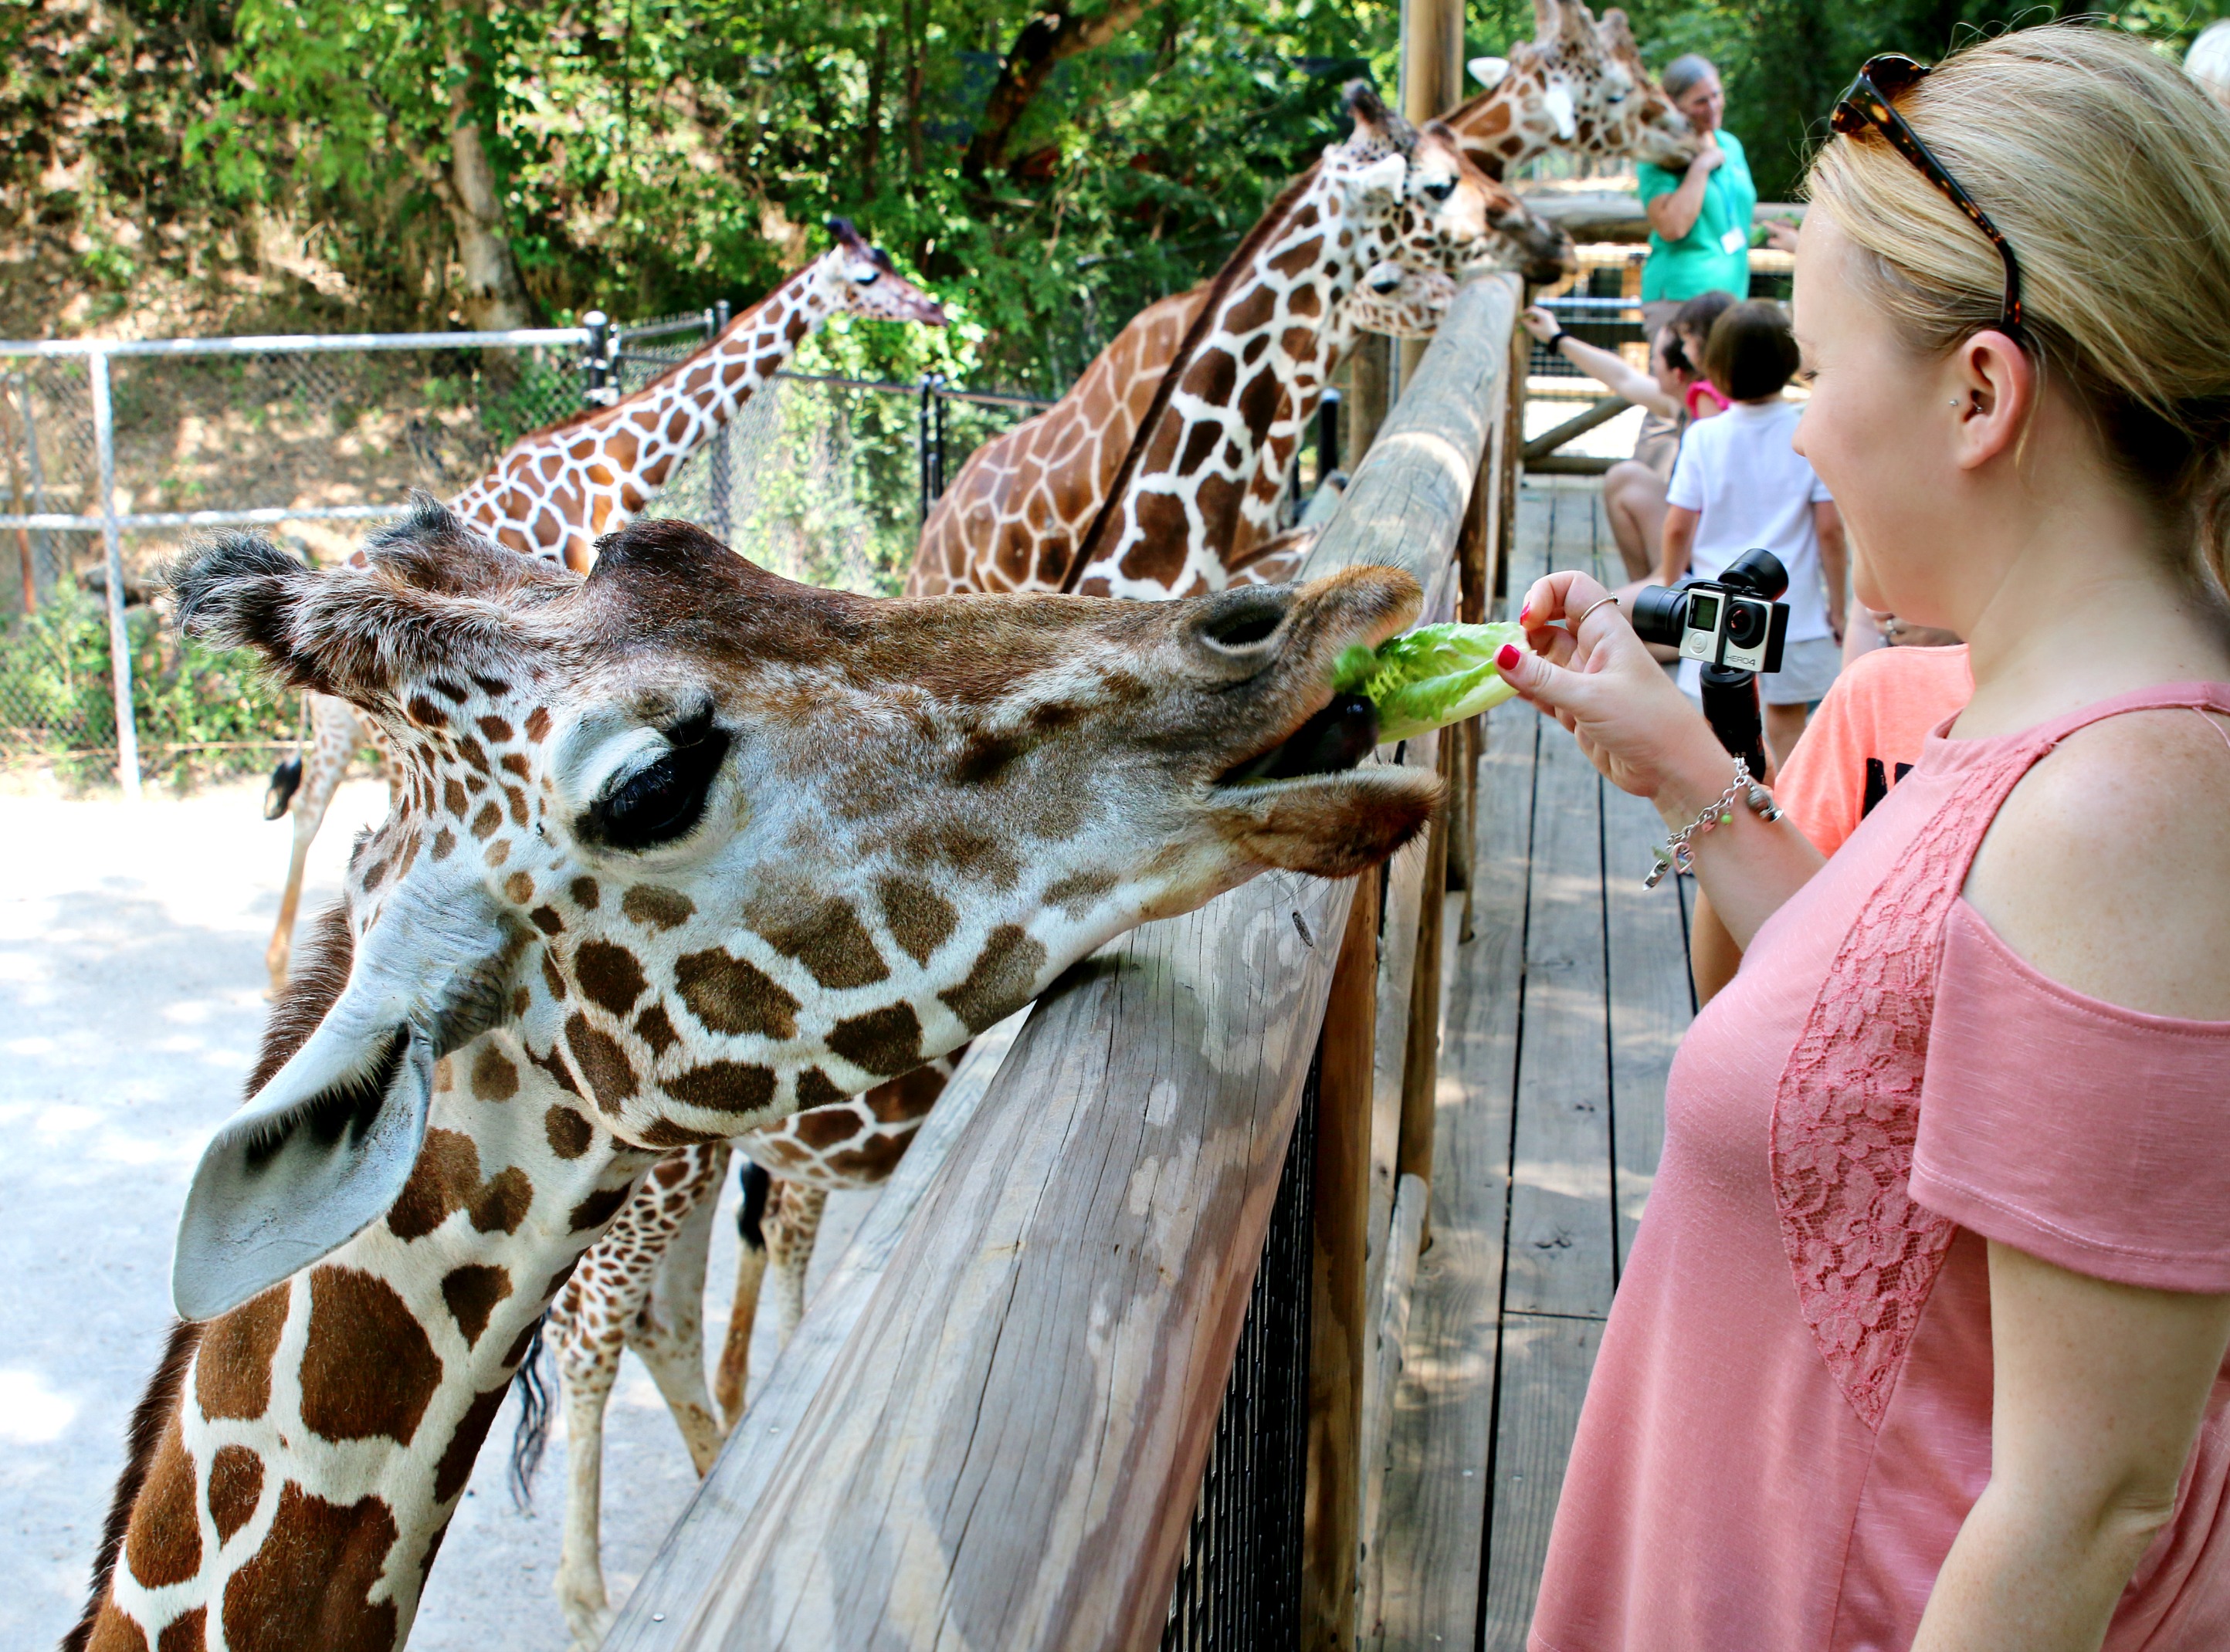 IG feeding giraffes